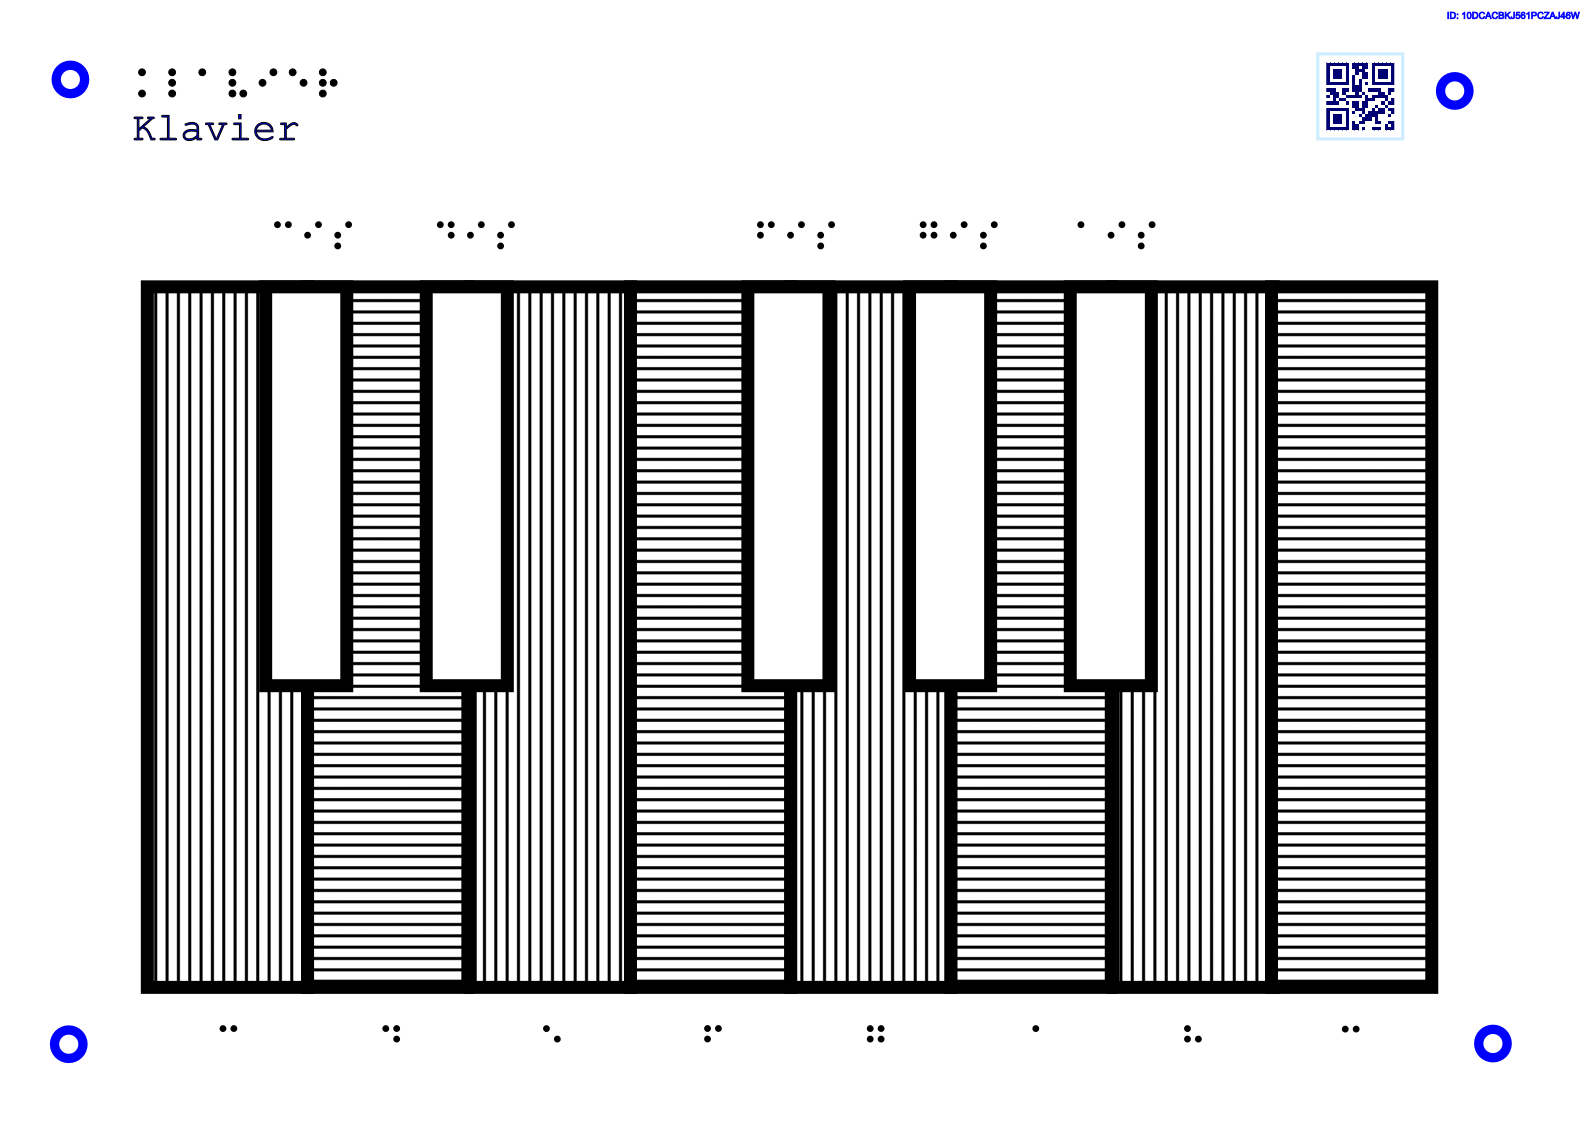 11Diese taktile Grafik erklärt die Abfolge der Klaviertasten.